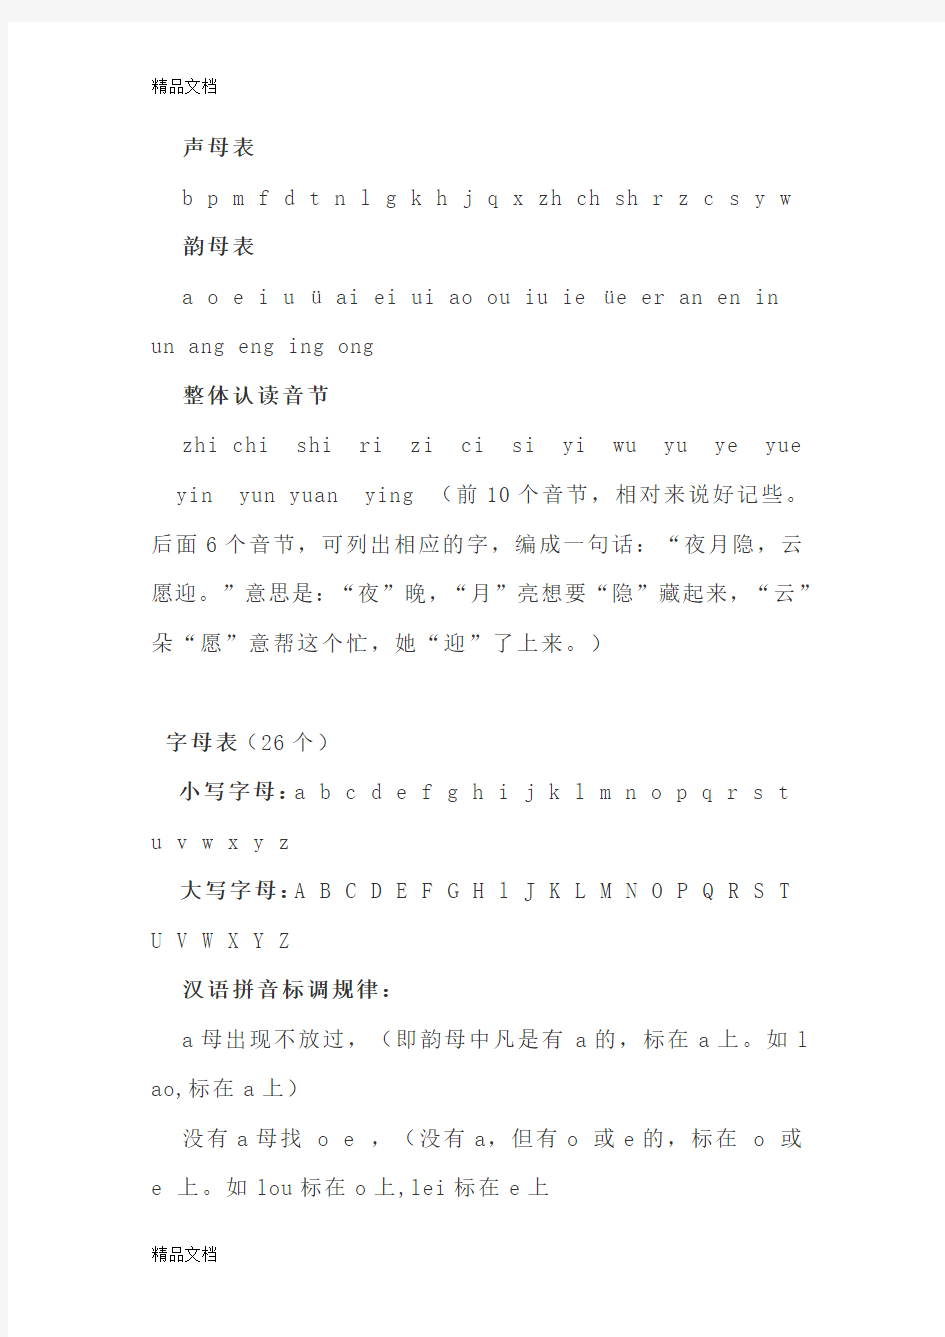 汉语拼音学习大全46694讲解学习